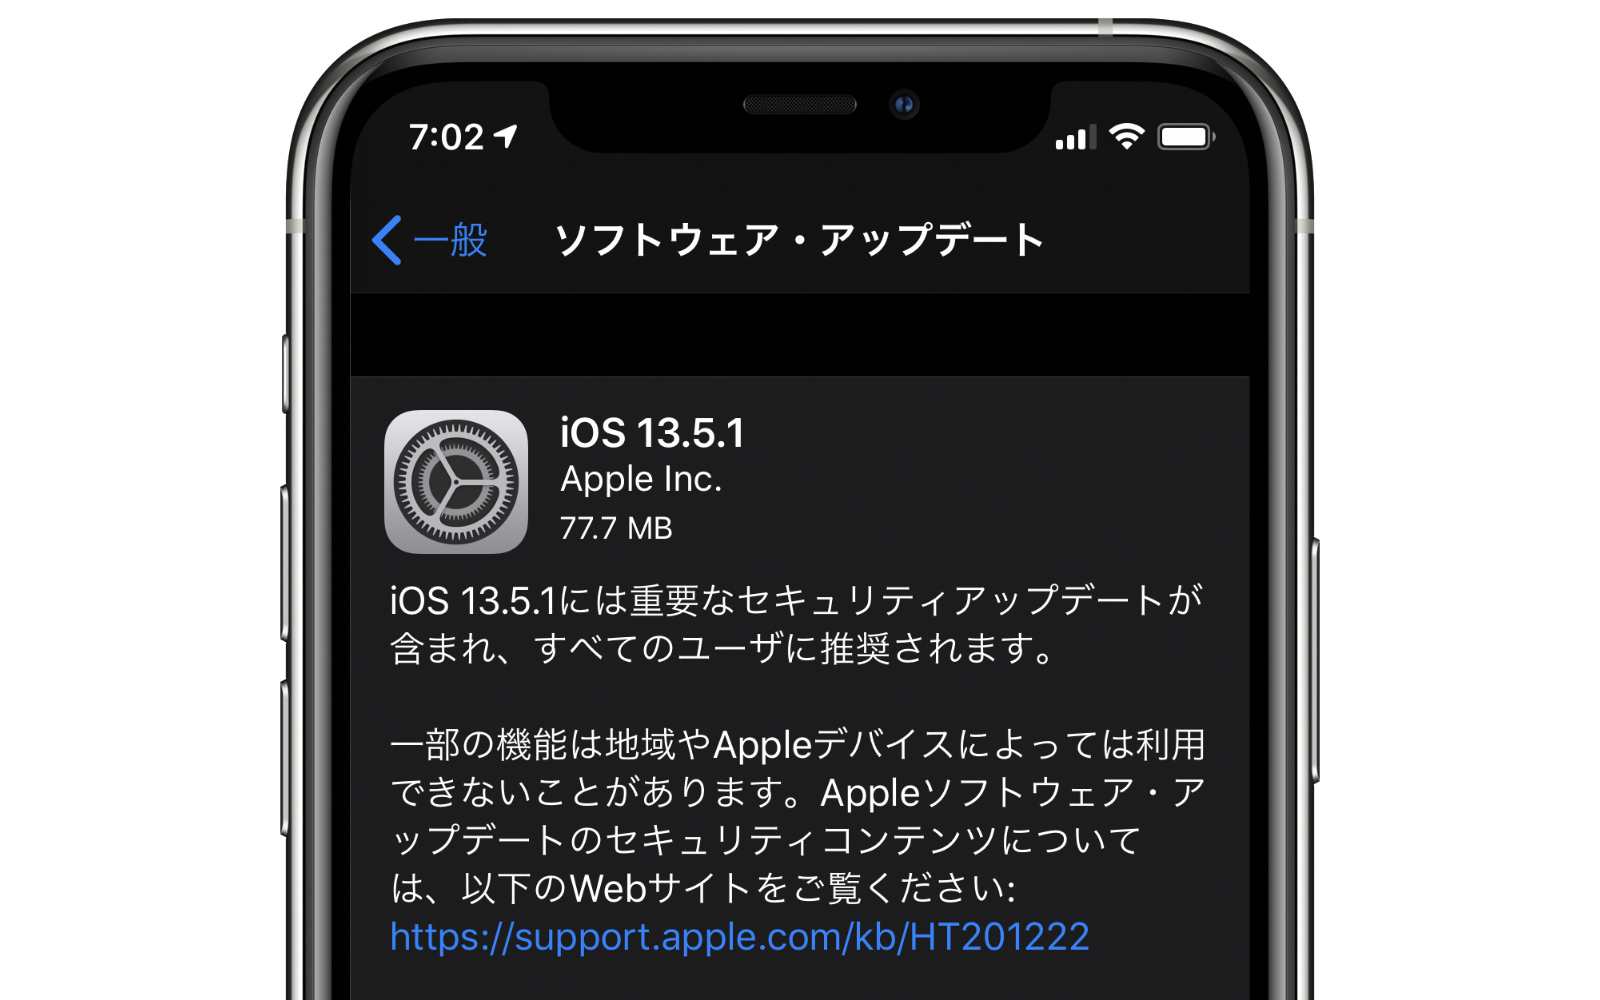 IOS13 5 1 update